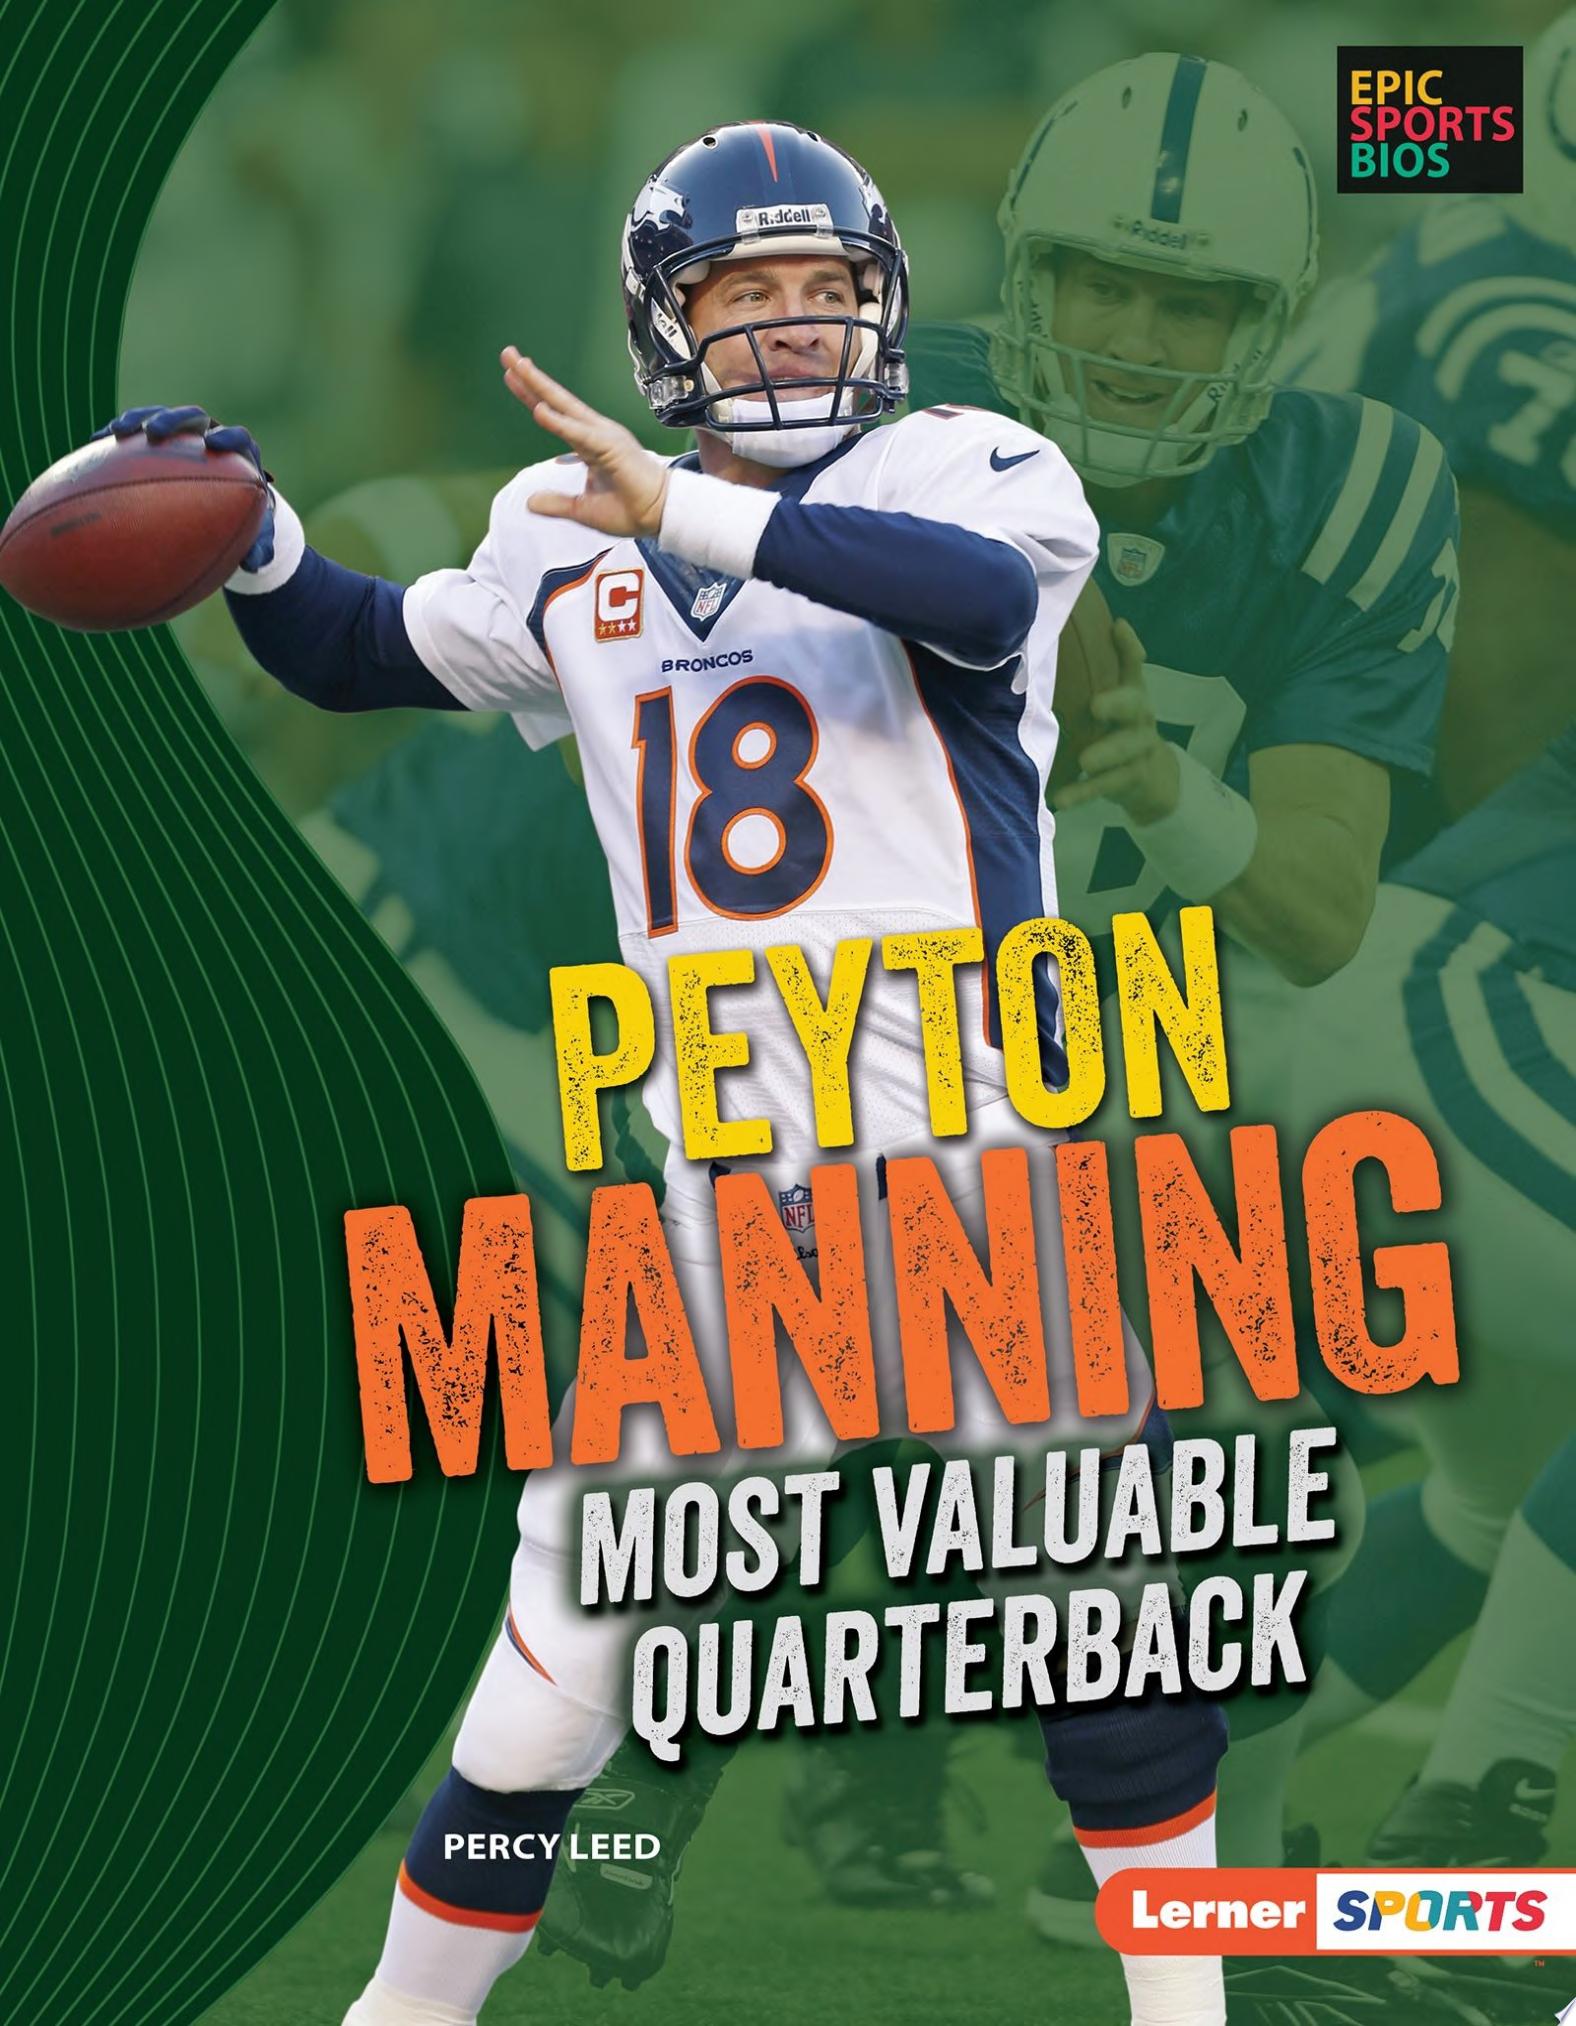 Image for "Peyton Manning"